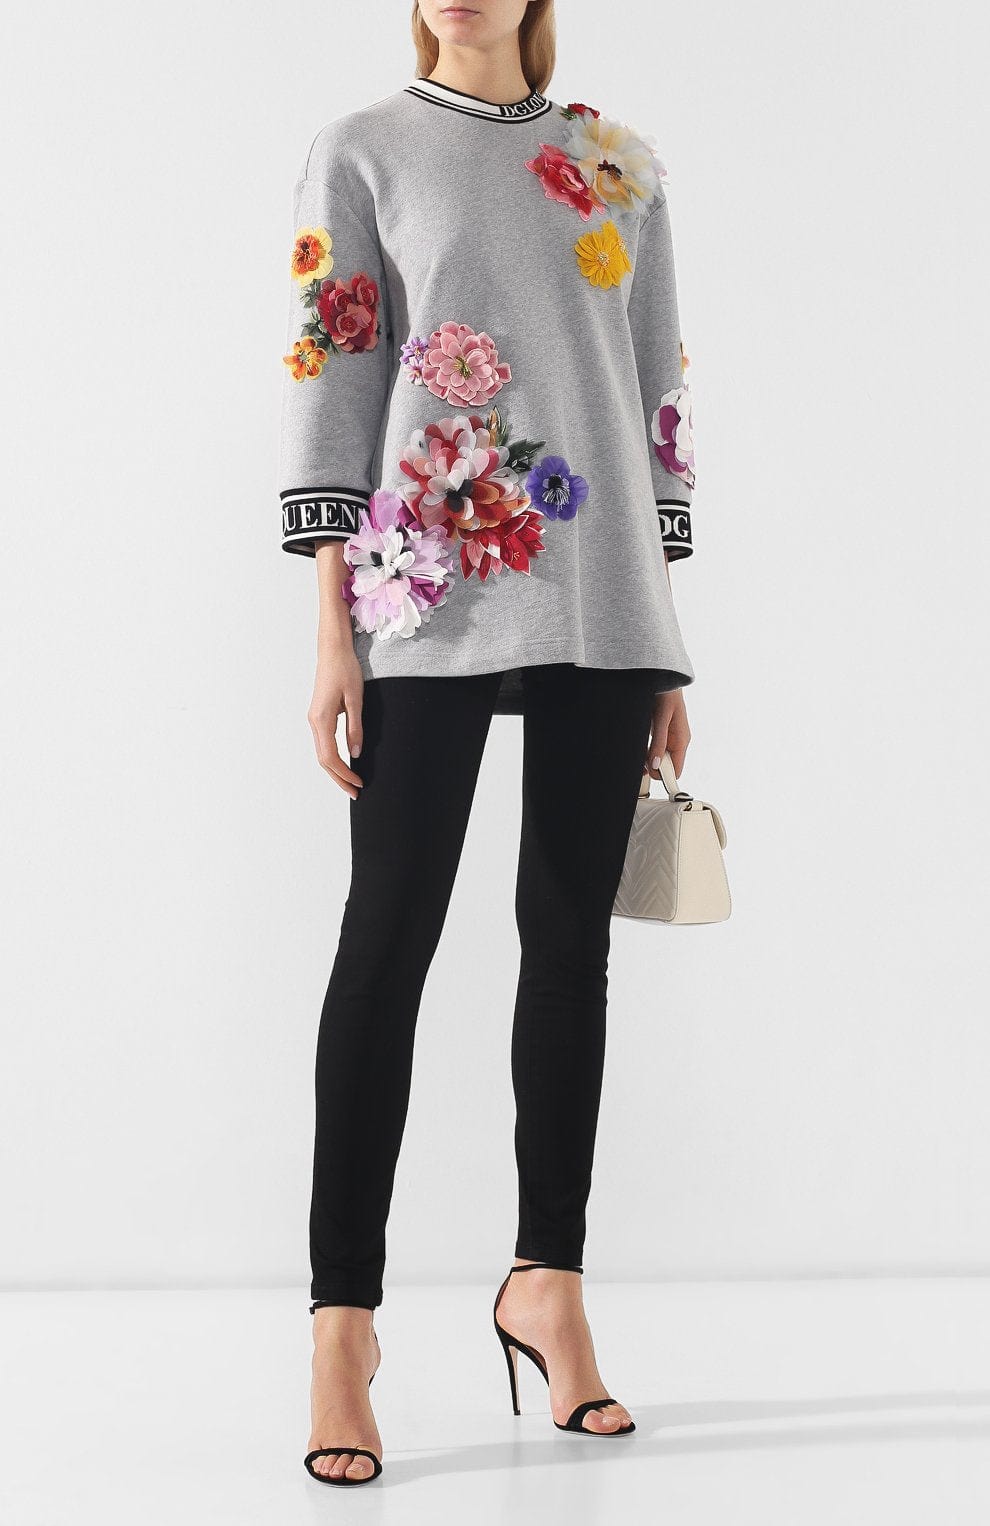 Dolce & Gabbana Embellished Floral Appliqued Sweatshirt